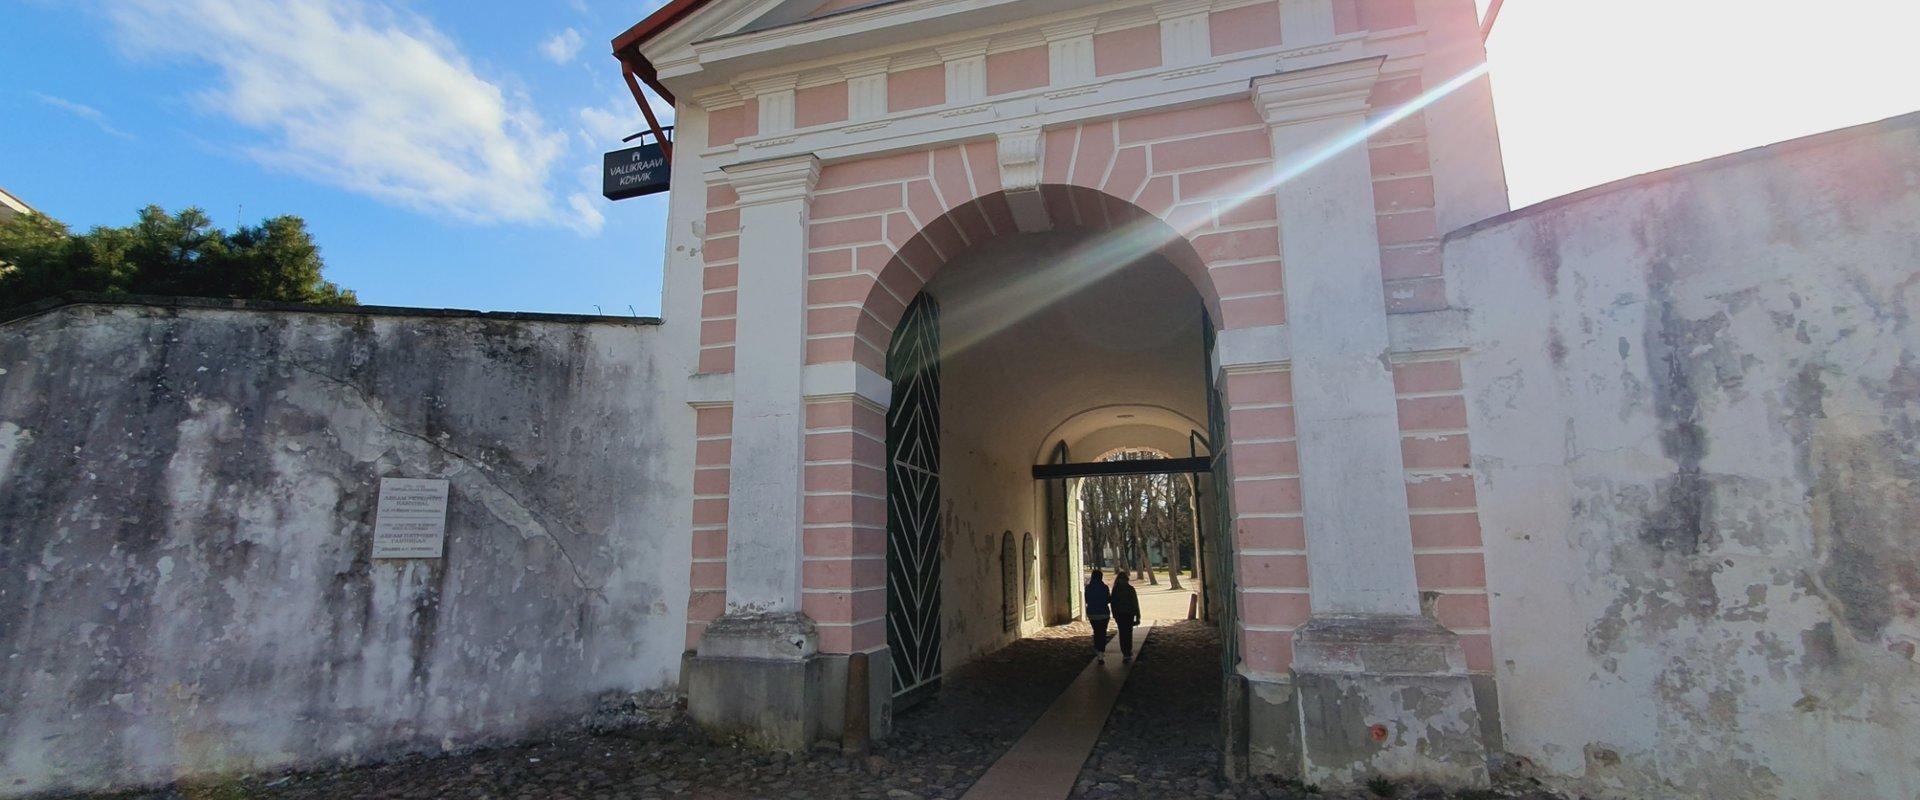 Tallinna Värav